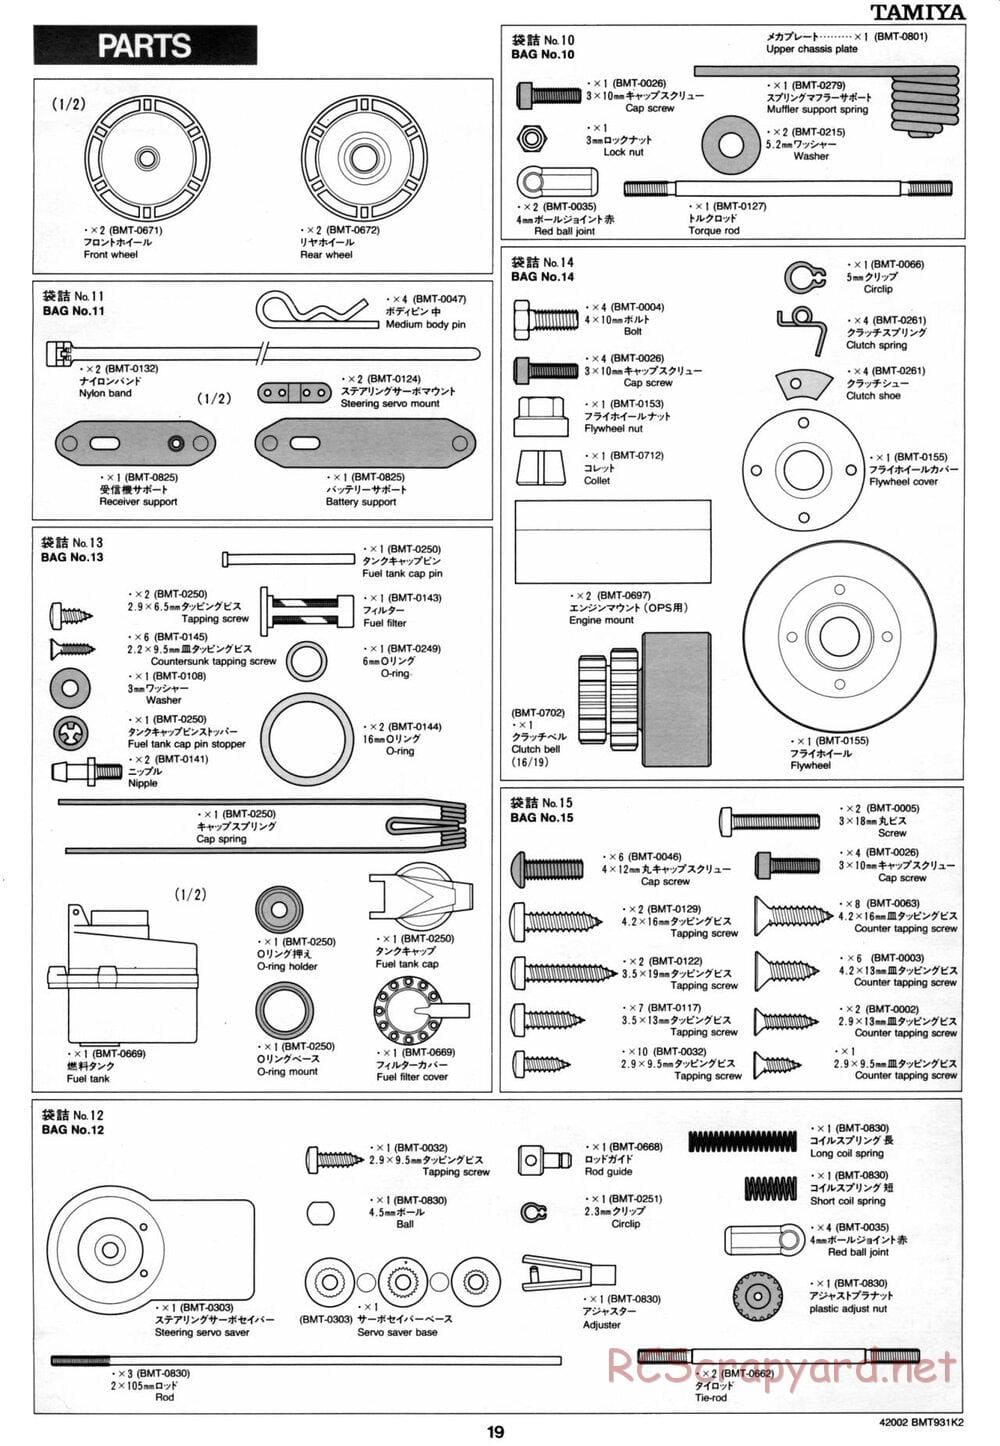 Tamiya - BMT 931 K2 Racing Chassis - Manual - Page 19